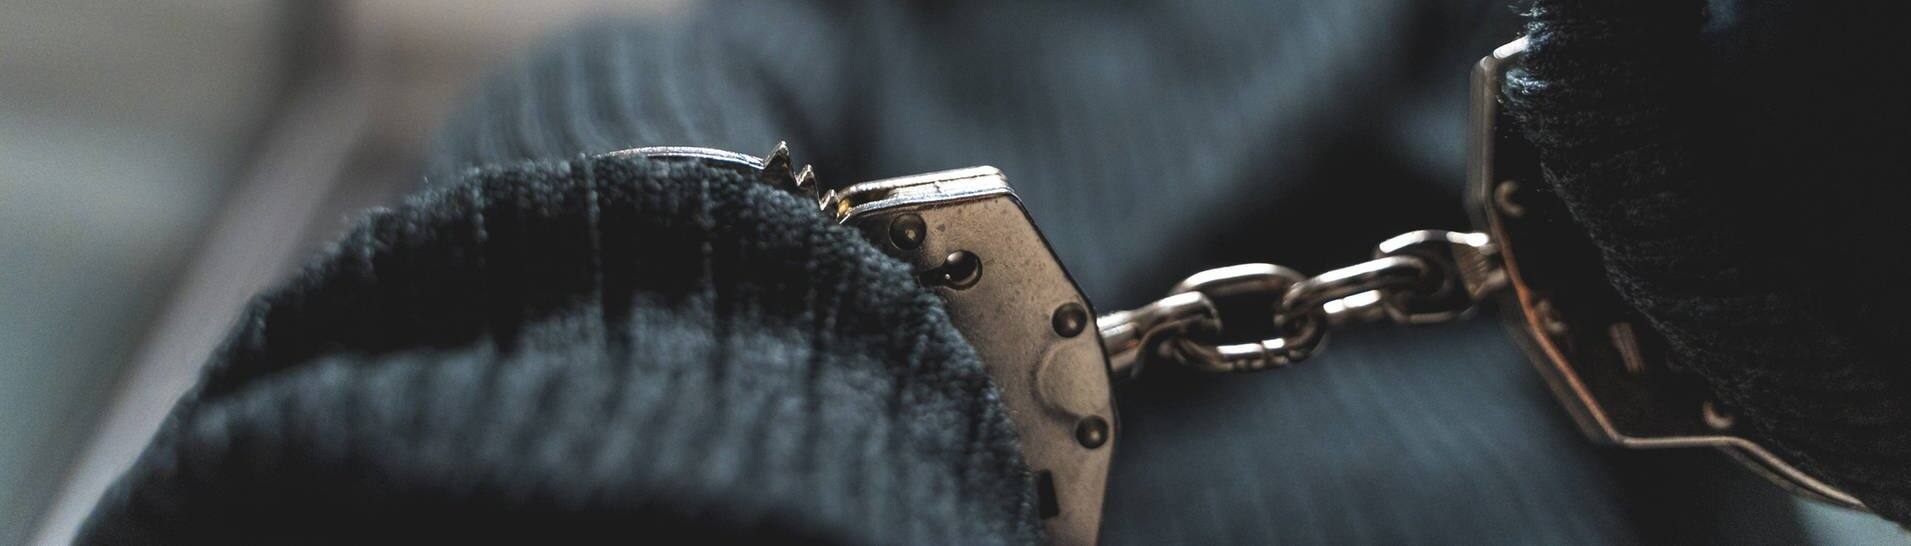 Ein Einbrecher in Handschellen (Symbolbild) - Mutmaßlicher Räuber in New York wegen seiner bunten Unterhose überführt (Foto: IMAGO, IMAGO / Bihlmayerfotografie)